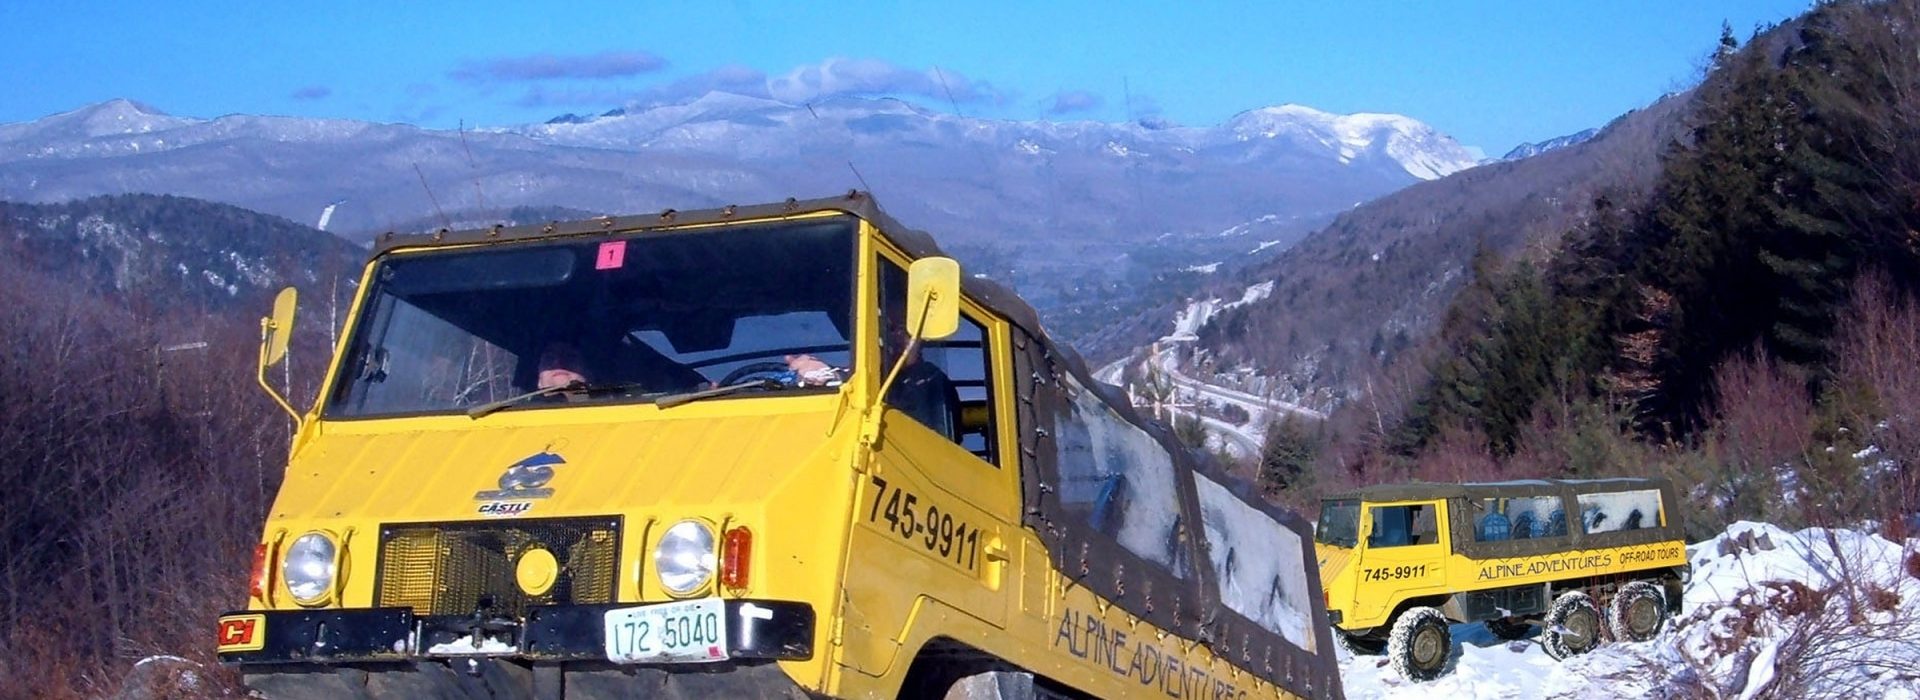 Alpine Adventures off road truck safari ride